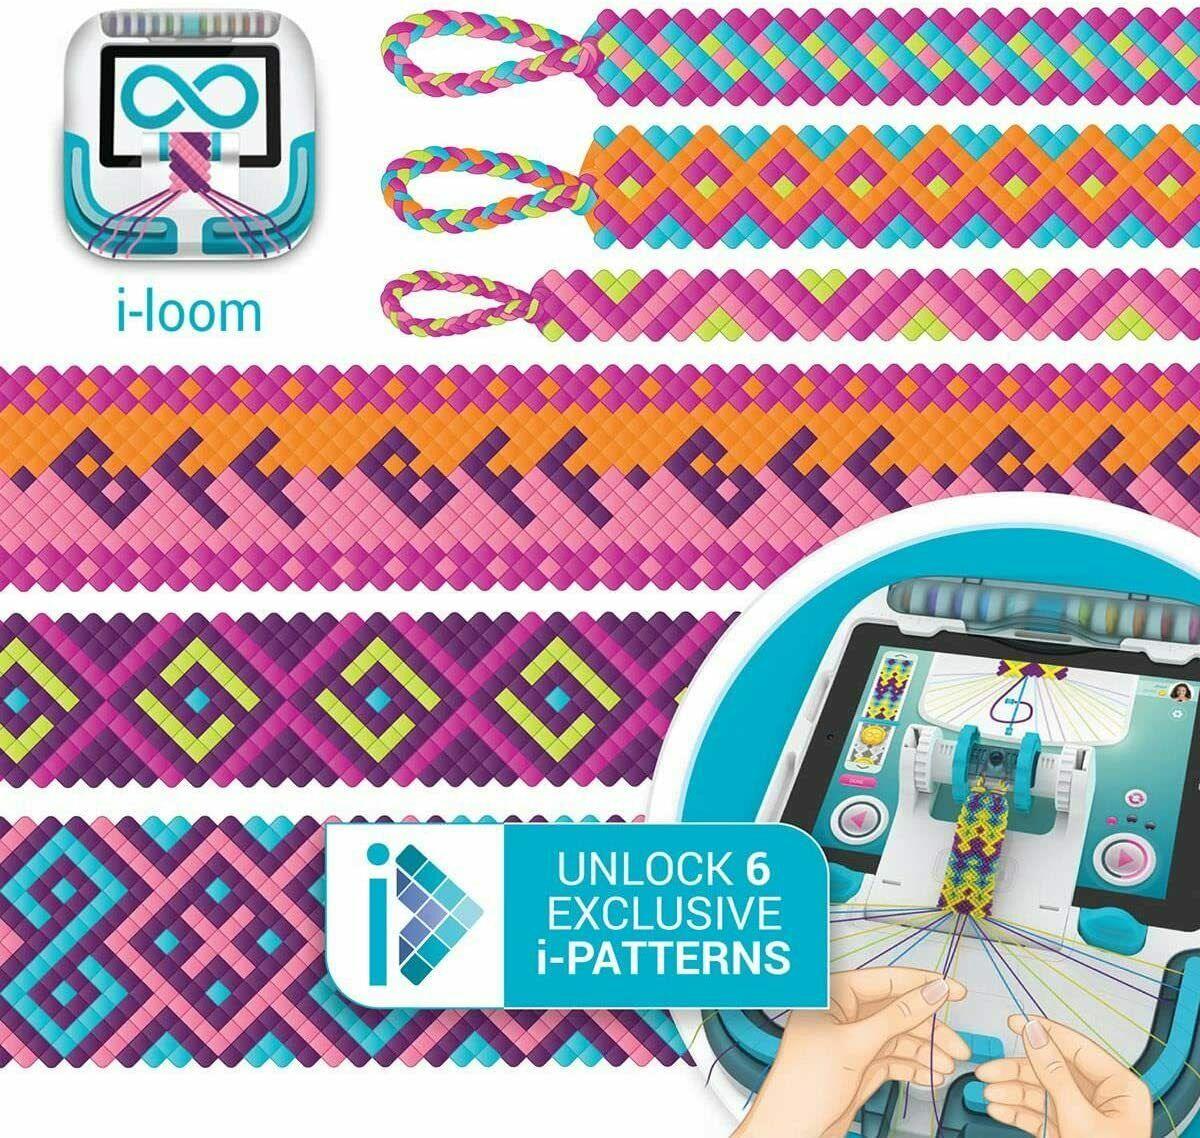 Kit de fabrication de bracelets d'amitié pour les Maroc